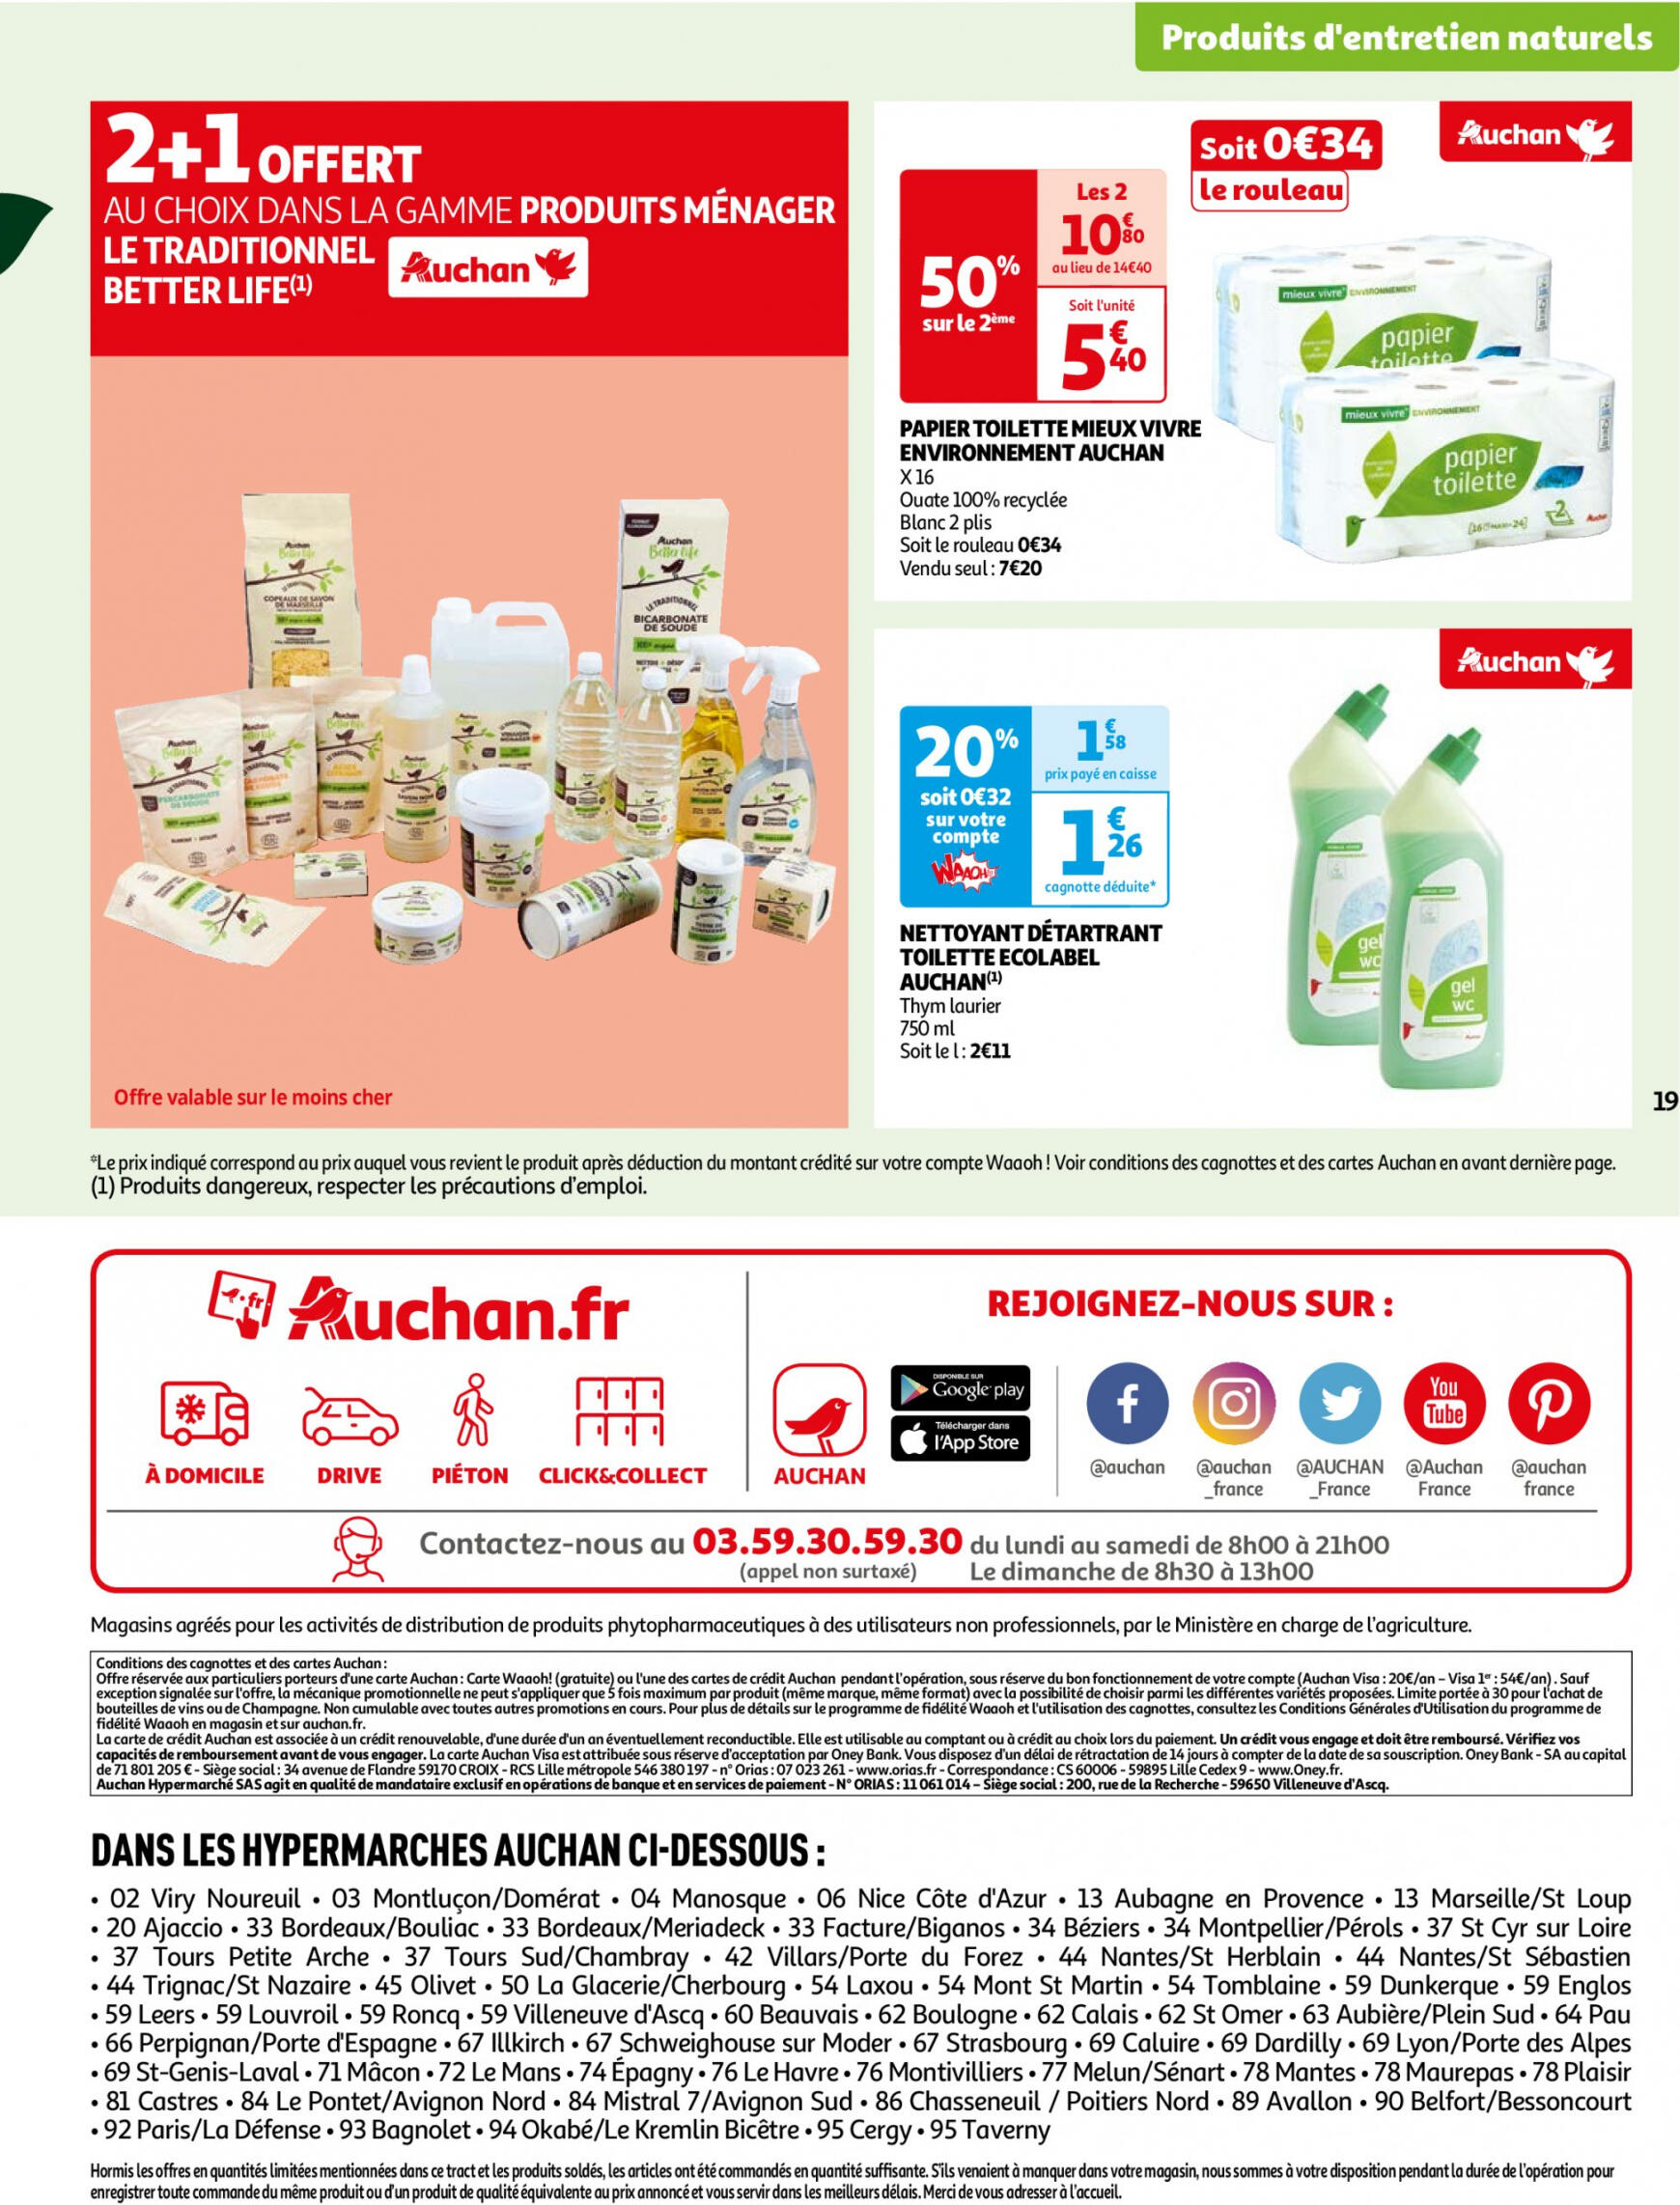 auchan - Auchan - Faites le plein de bio à prix bas folder huidig 22.05. - 03.06. - page: 19